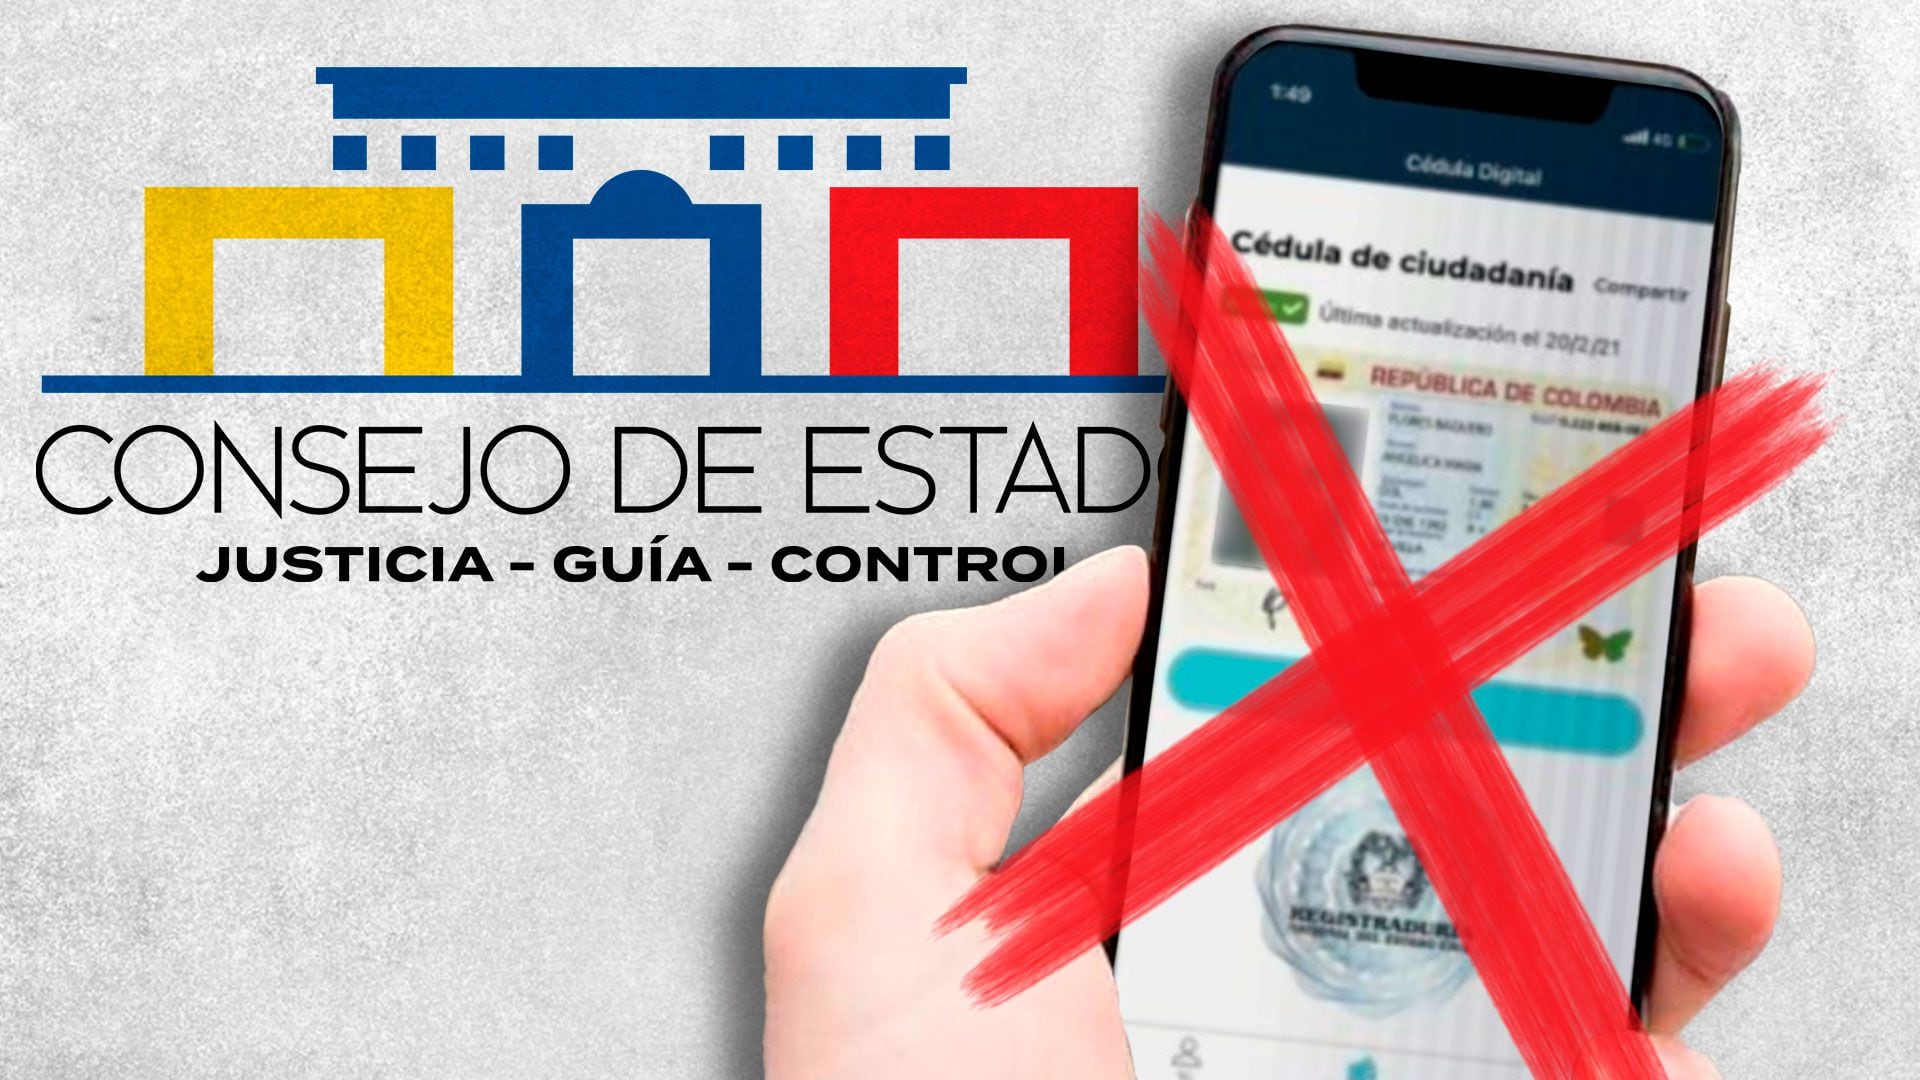 Consejo de Estado tumbó demanda que pretendía anular la cédula digital. Jesús Aviles / Infobae